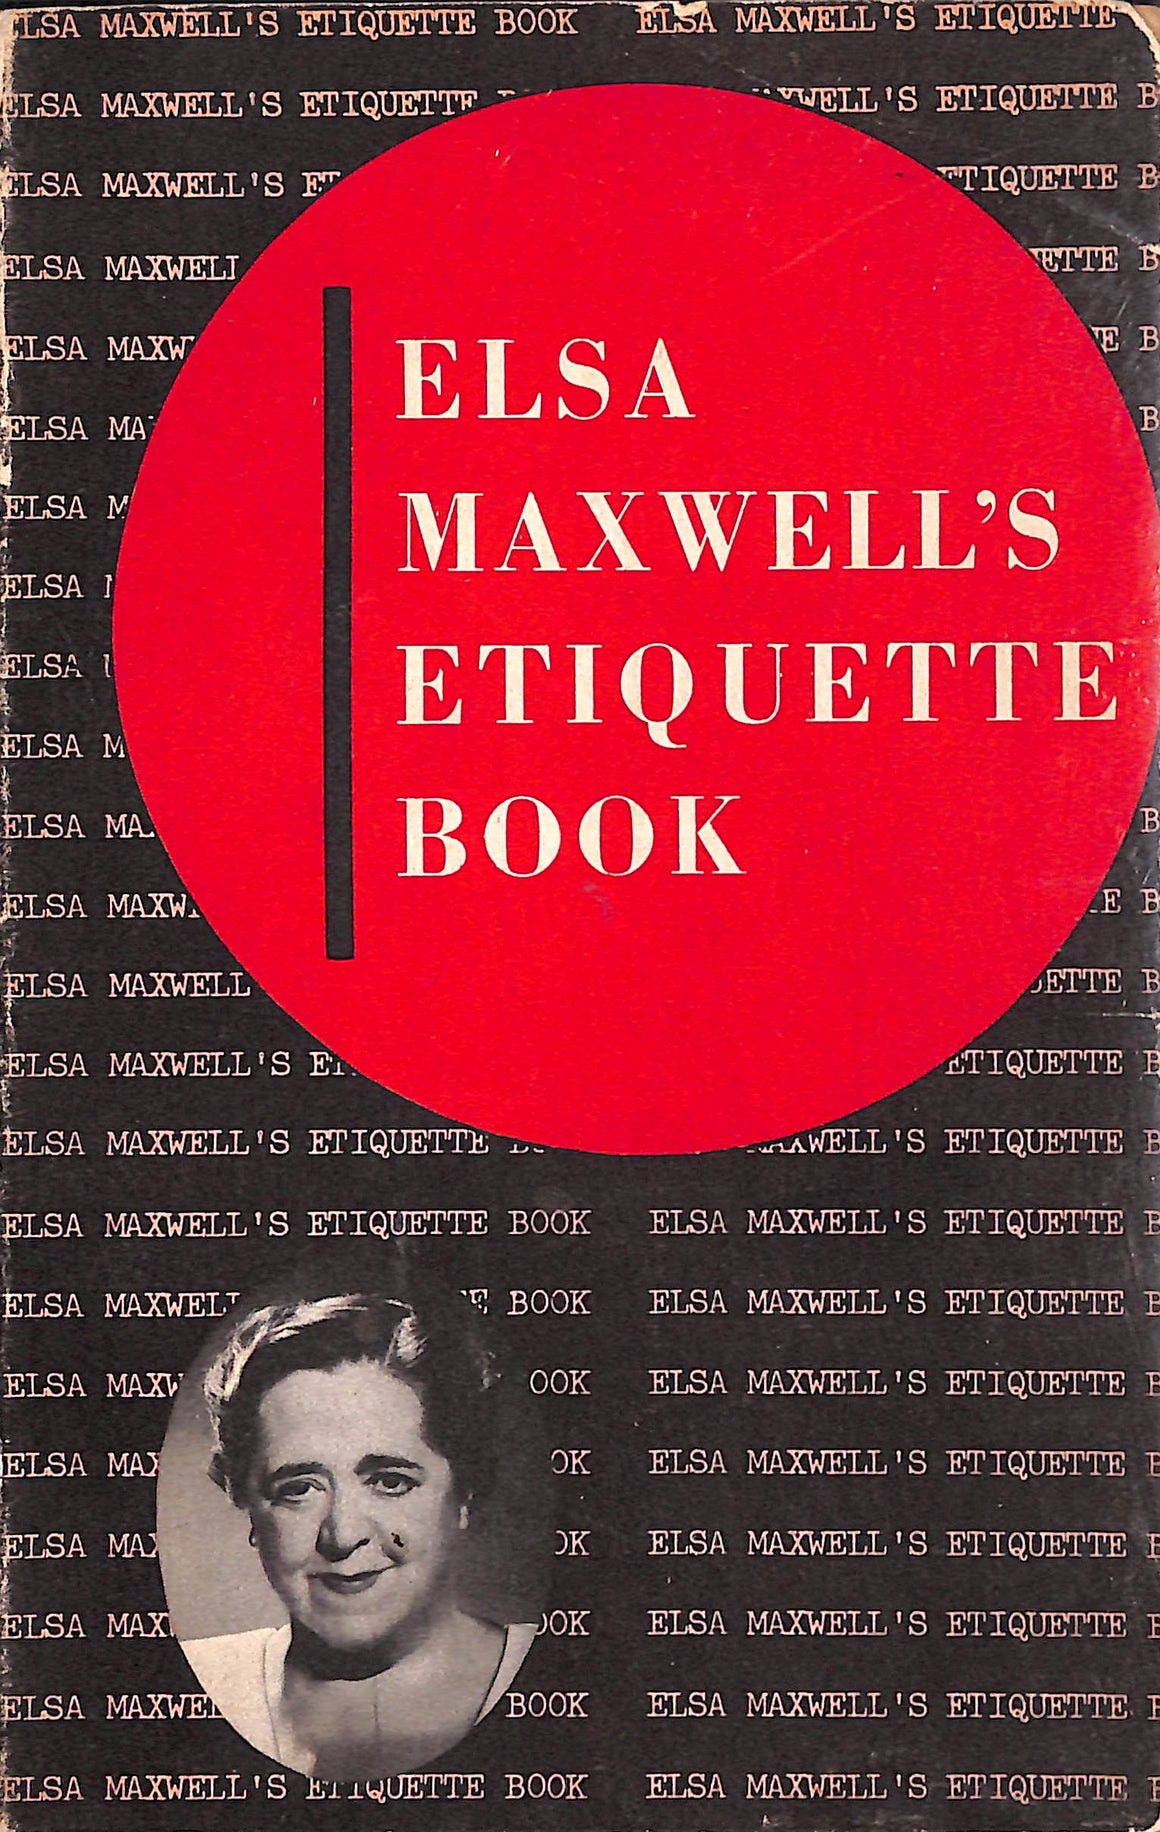 "Elsa Maxwell's Etiquette Book" 1951 MAXWELL, Elsa